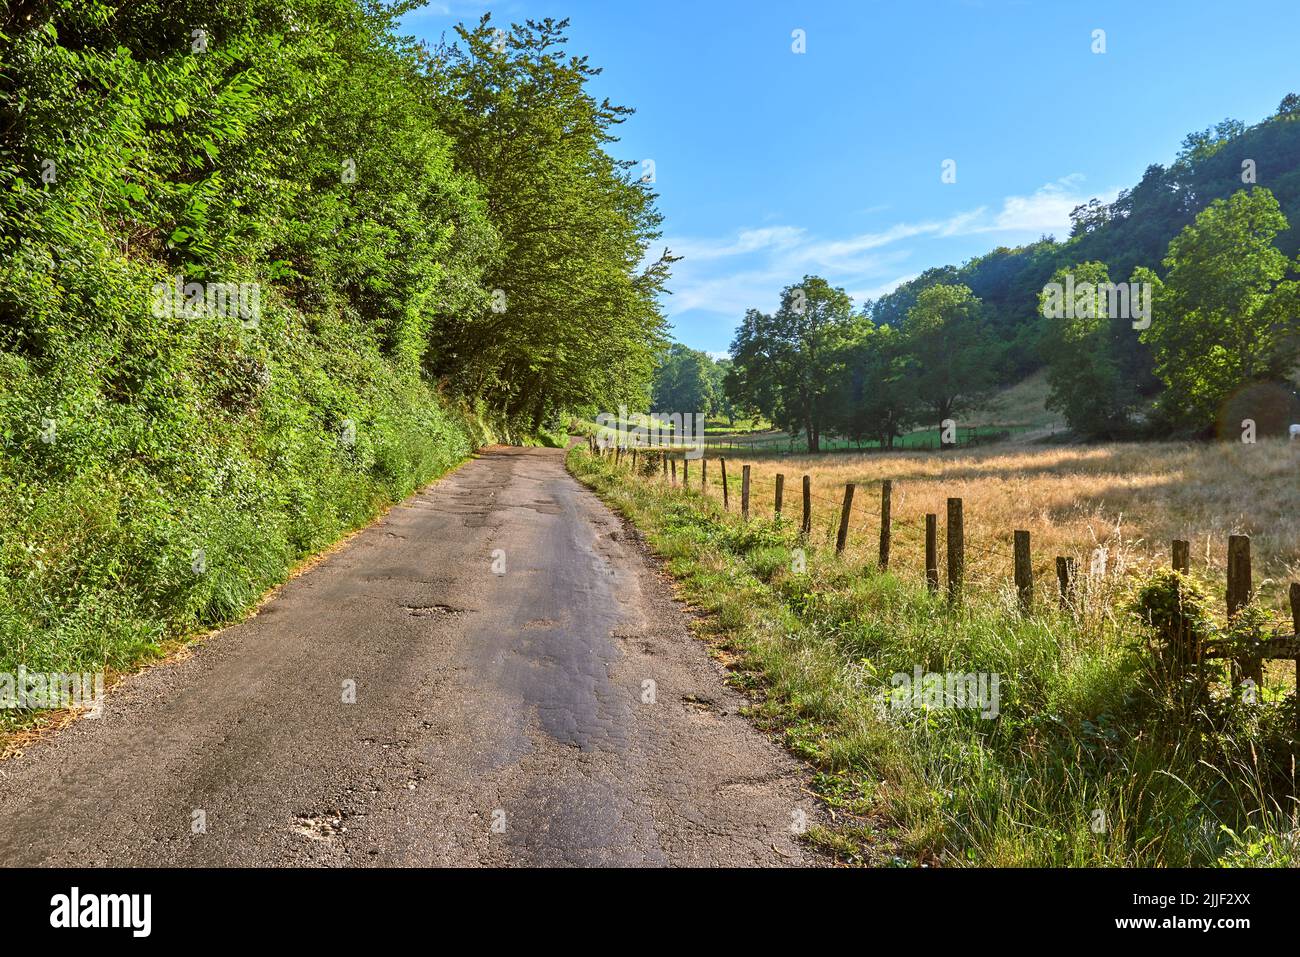 Naturlandschaft Blick auf grüne Landschaft mit einem blauen Himmel Hintergrund. Isolierte Straße in einer natürlichen Umgebung mit wachsenden Gras, Pflanzen und großen Bäumen Stockfoto